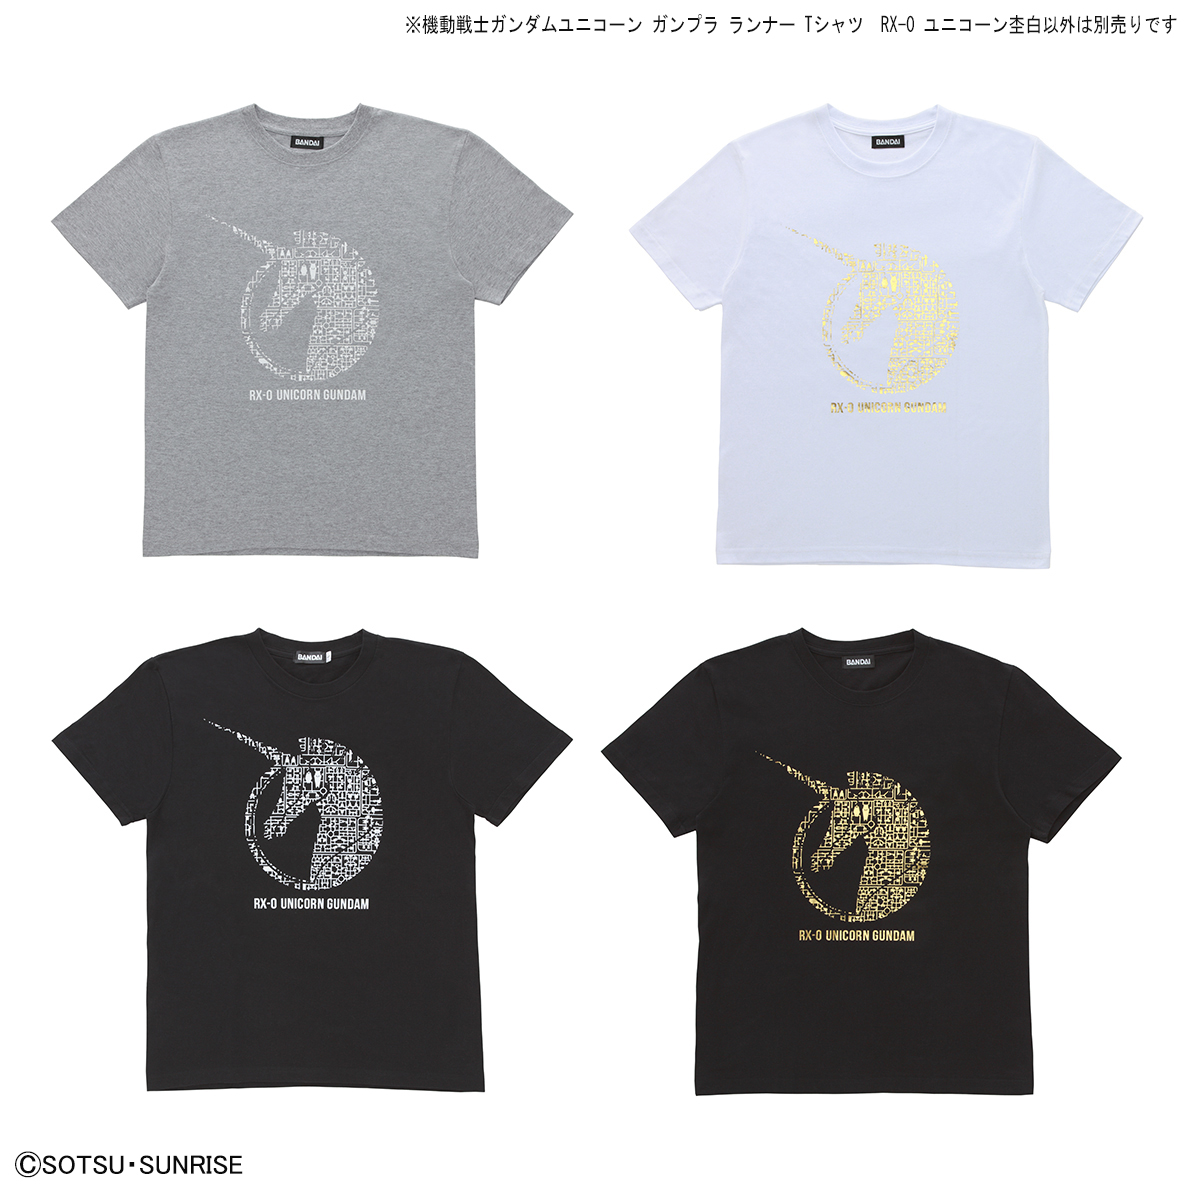 機動戦士ガンダムユニコーン ガンプラ ランナー Tシャツ  RX-0 ユニコーン杢白 商品画像